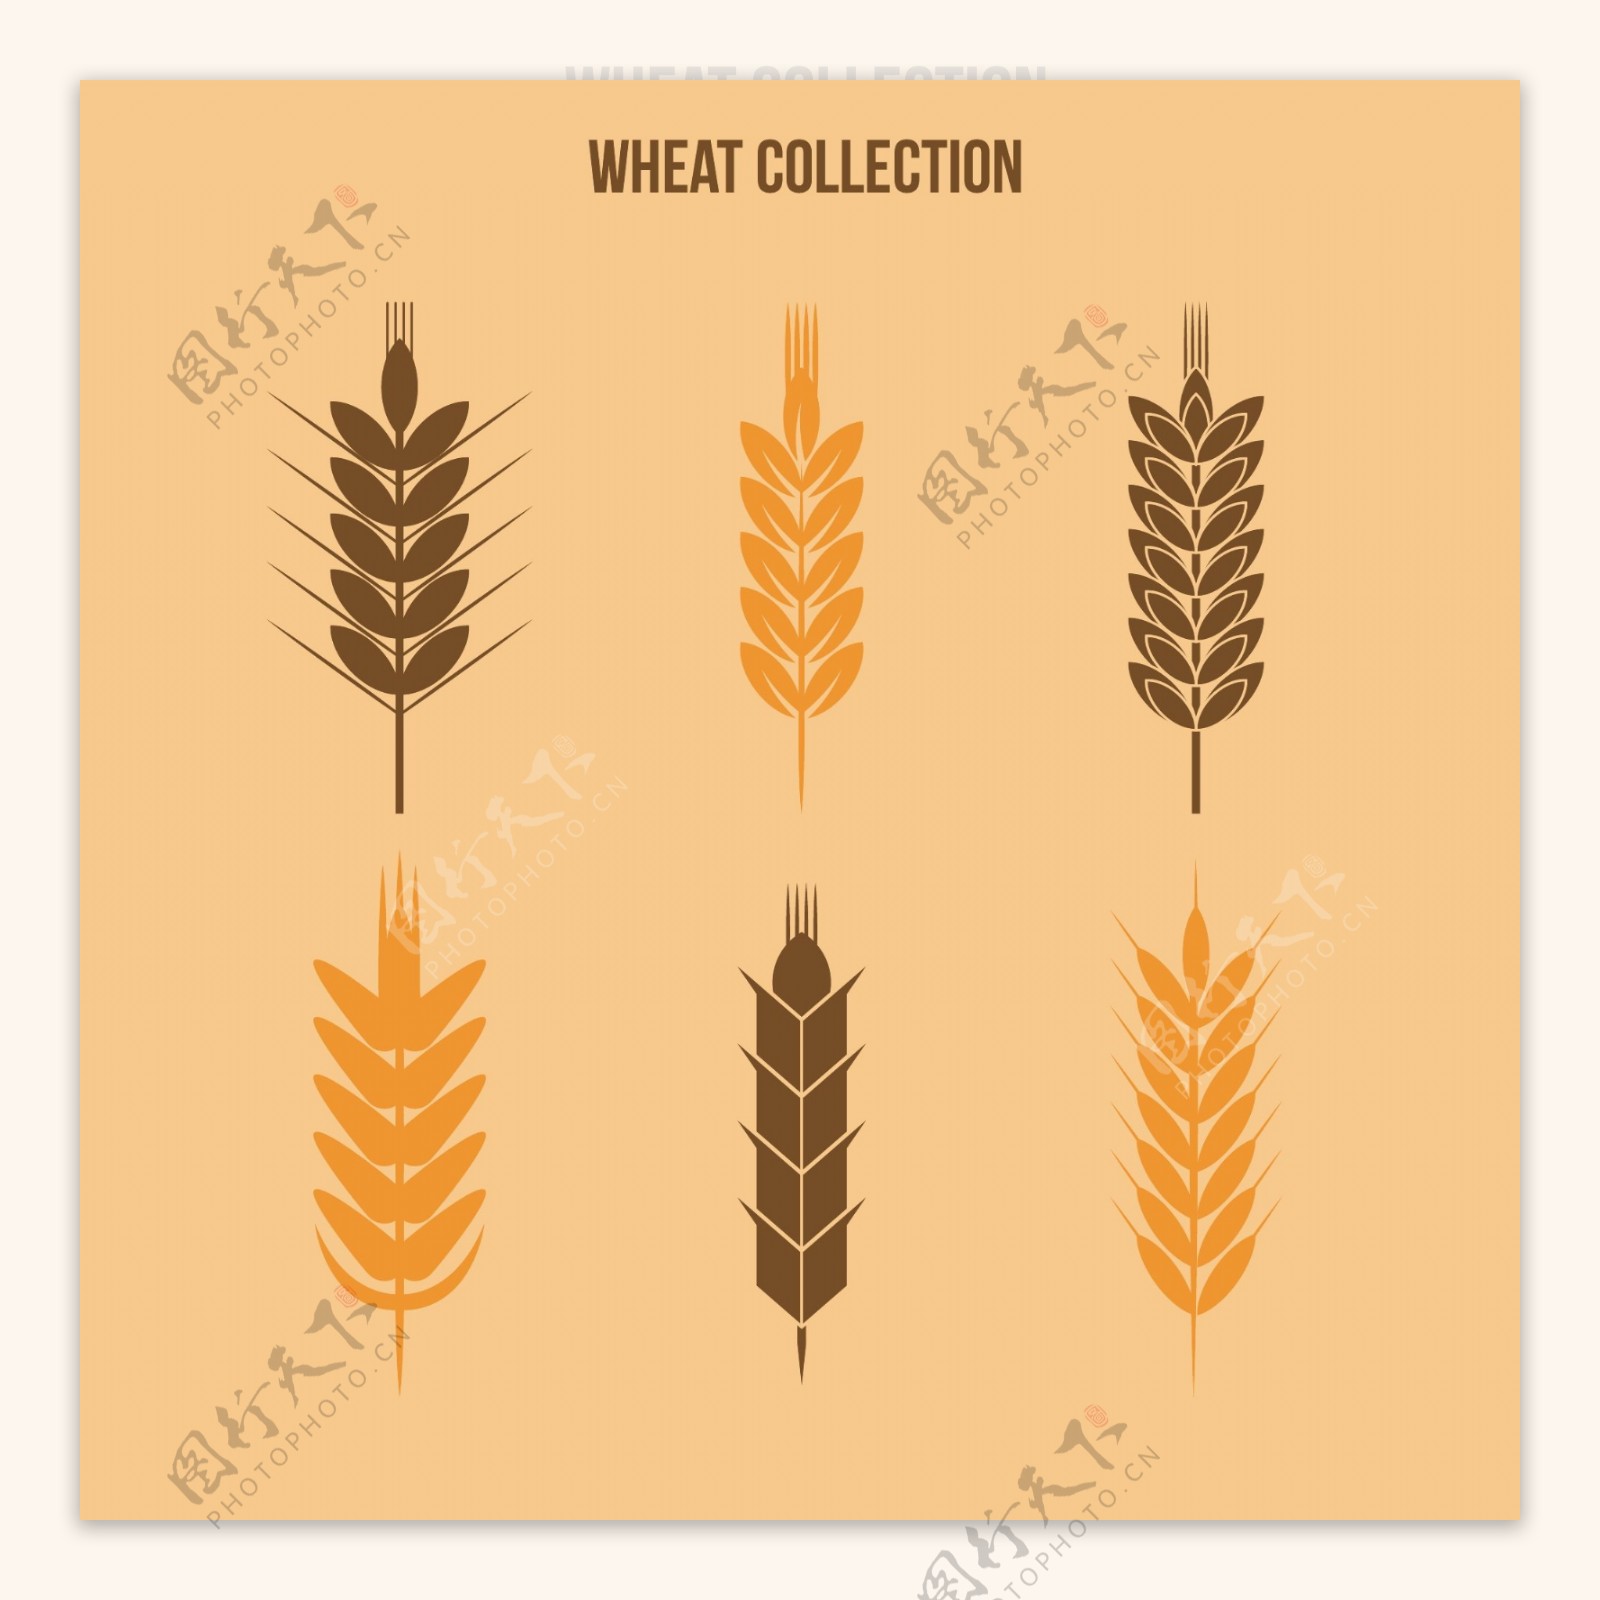 6款小麦合集图案设计